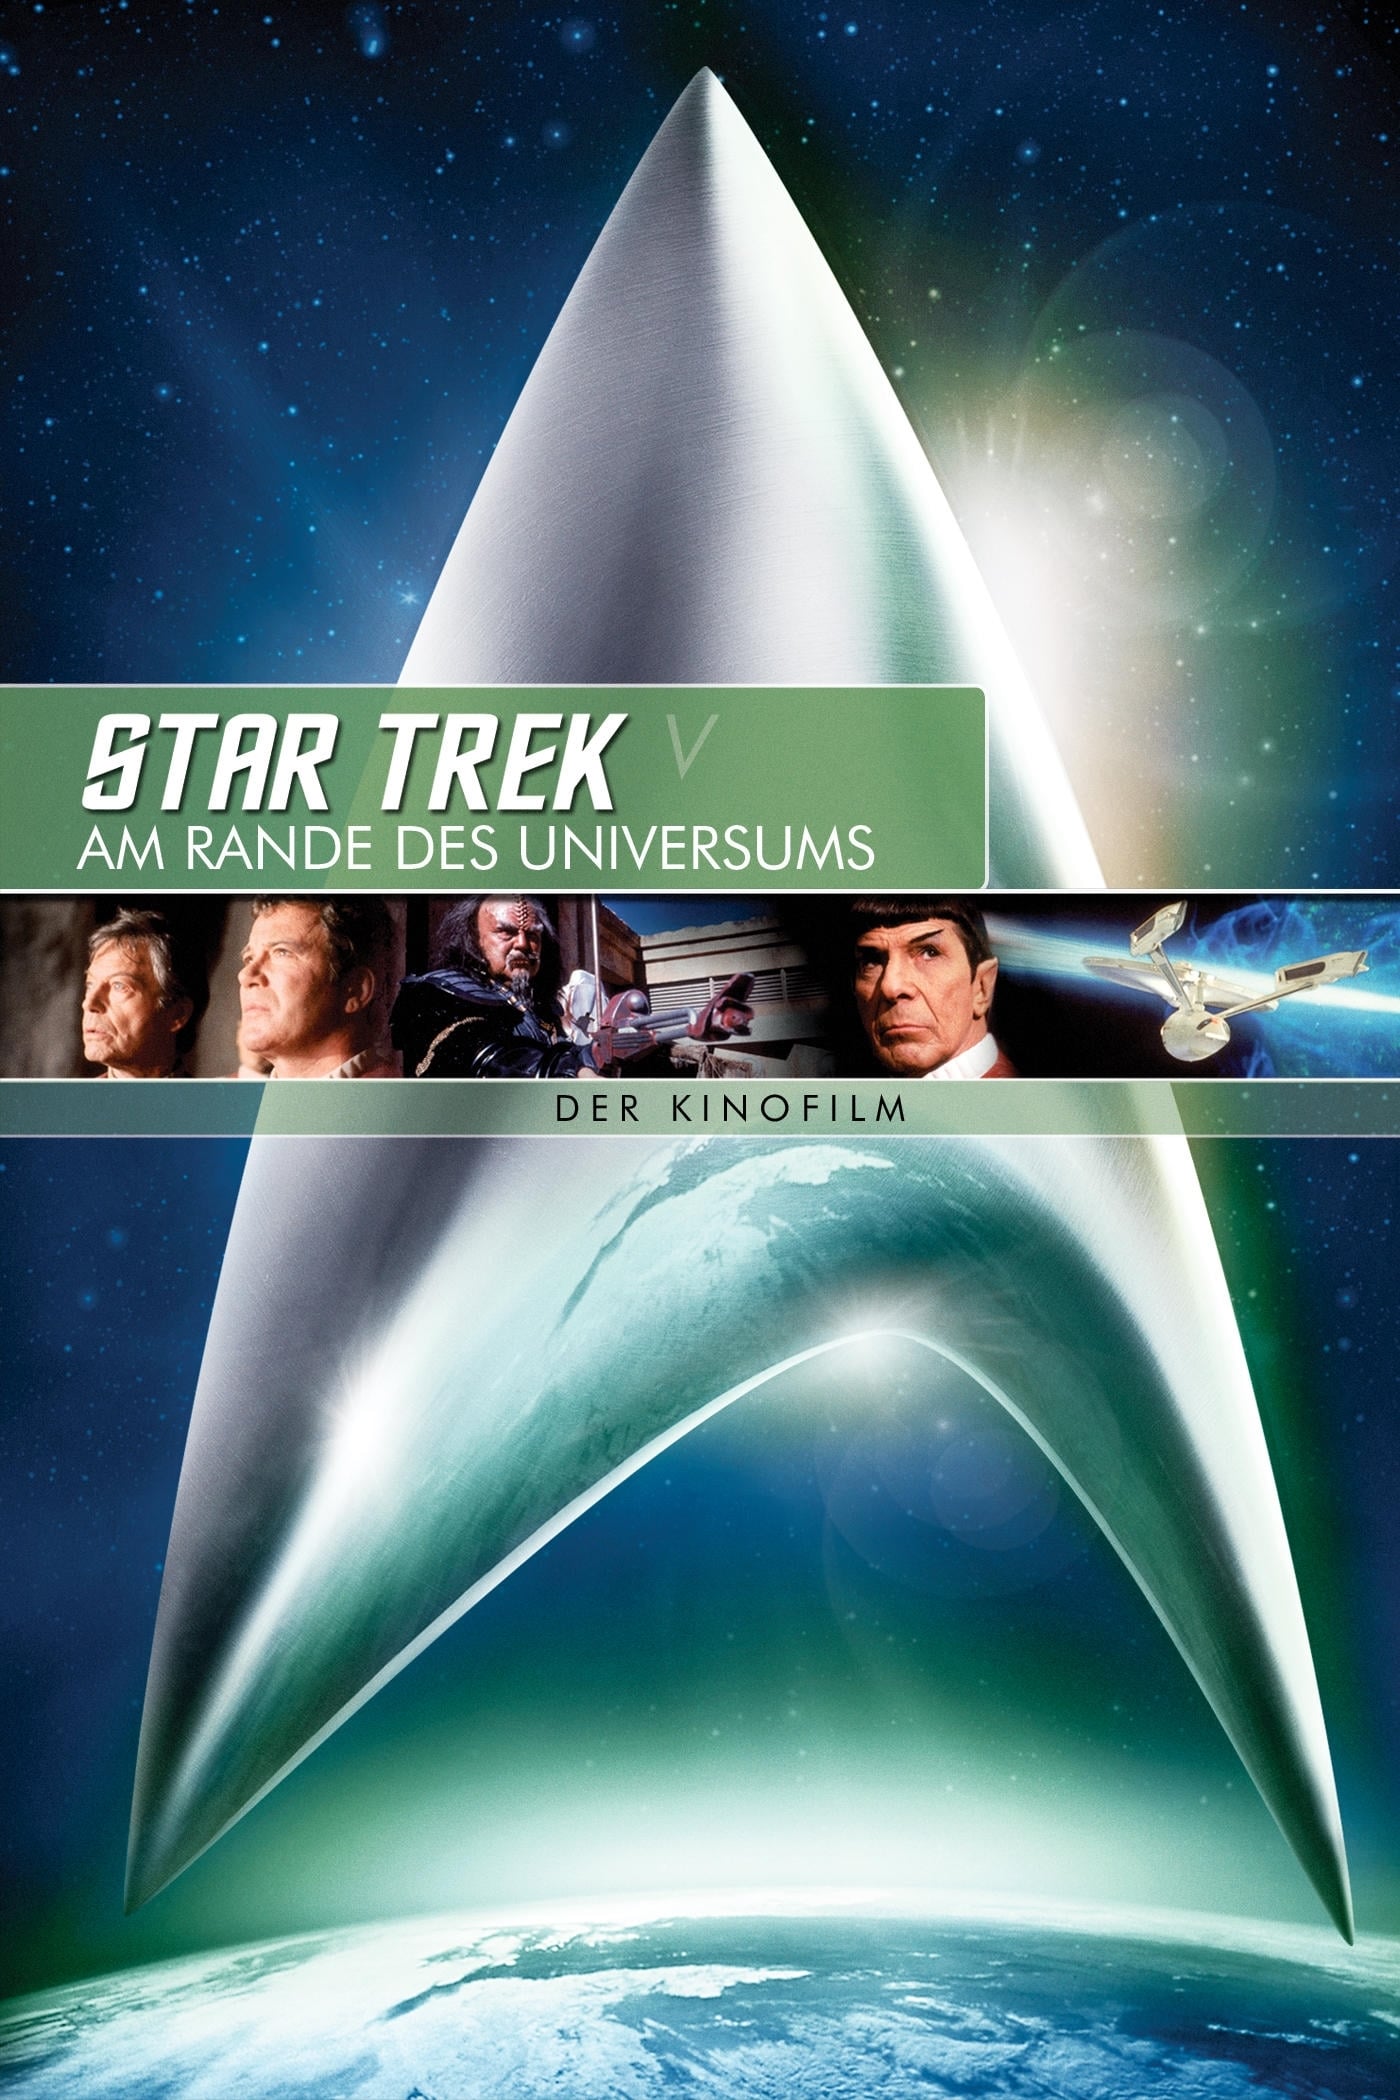 Plakat von "Star Trek V - Am Rande des Universums"